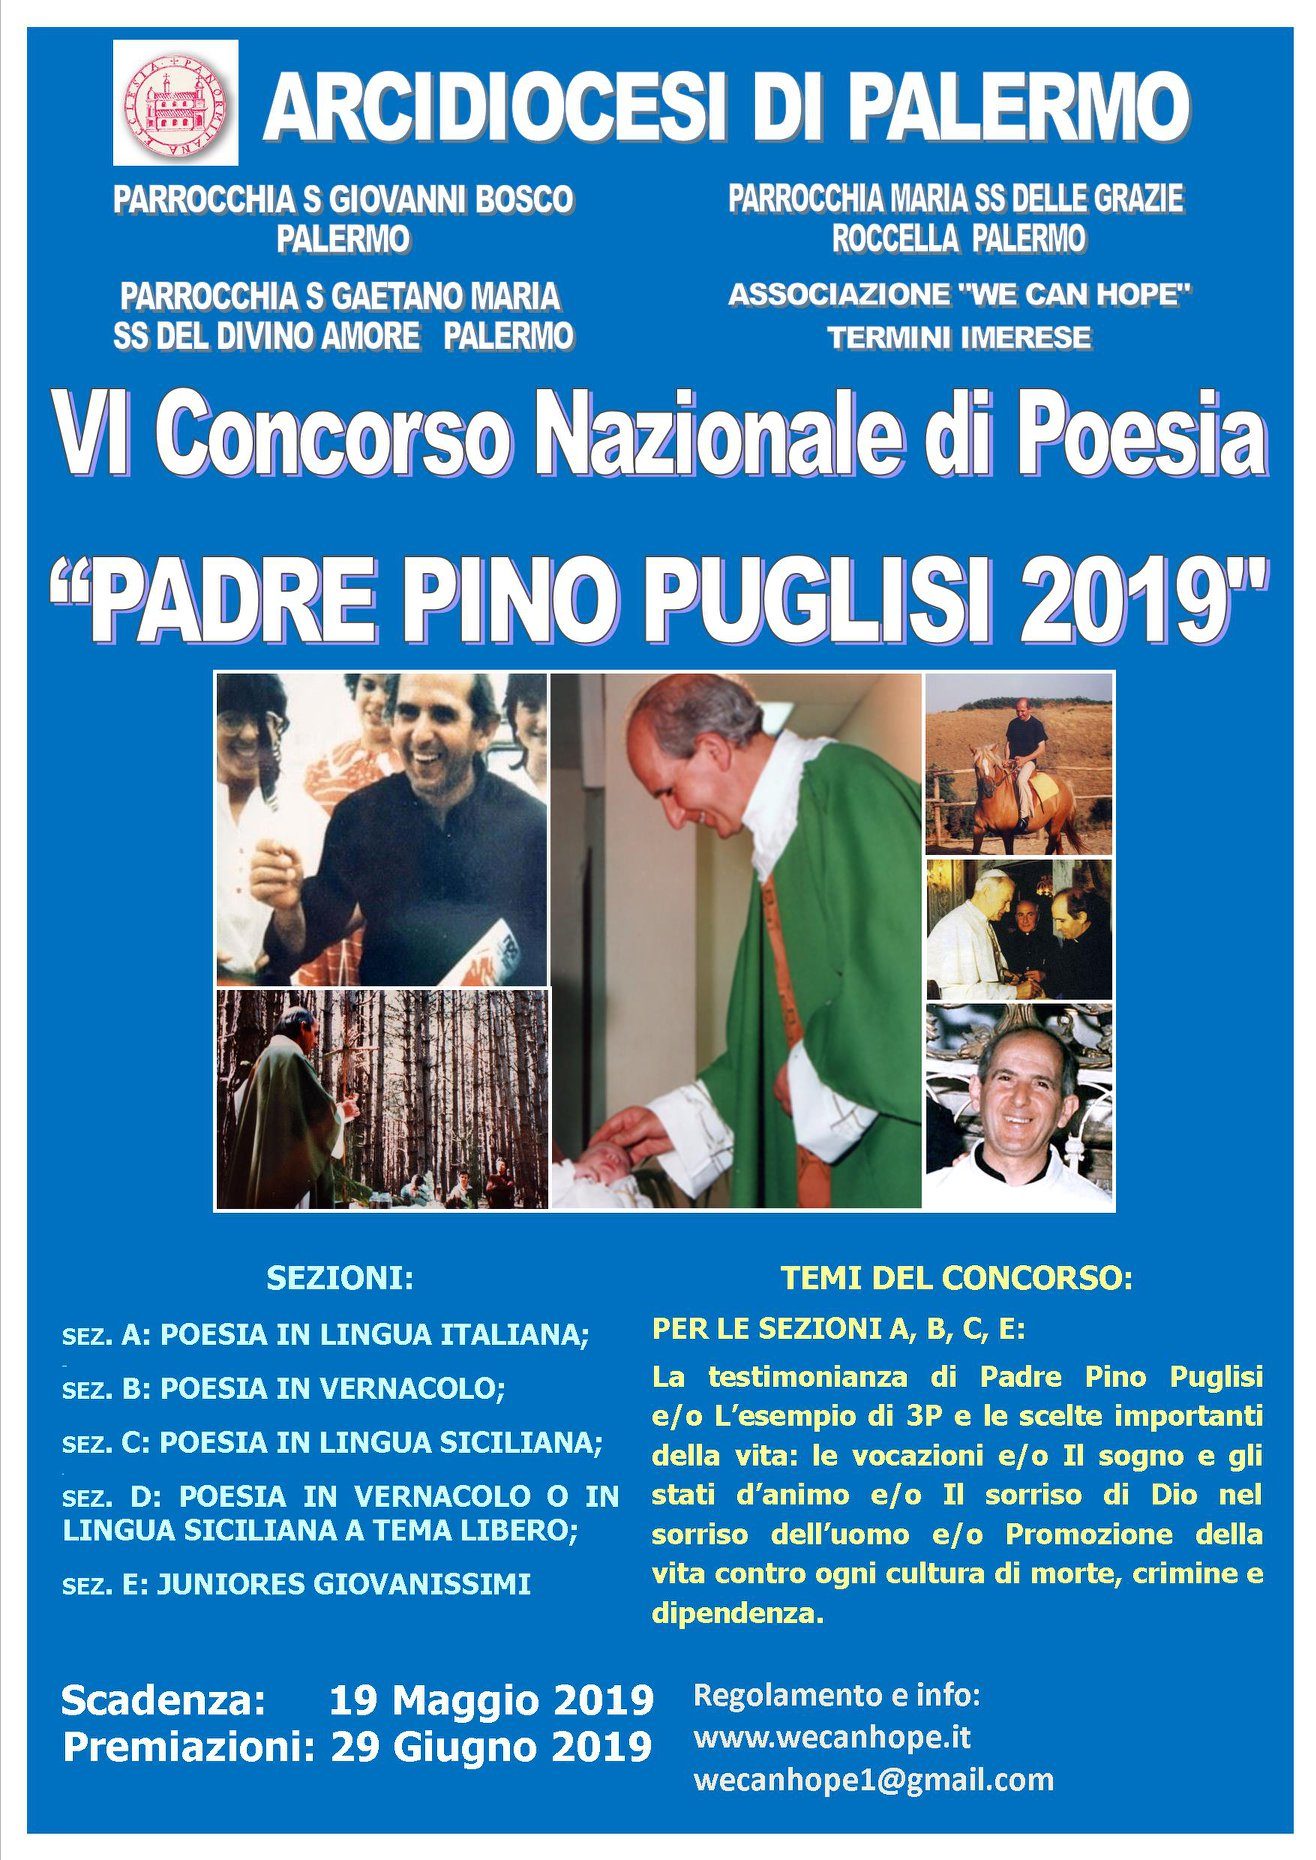 VI Concorso Nazionale di Poesia “Padre Pino Puglisi 2019”